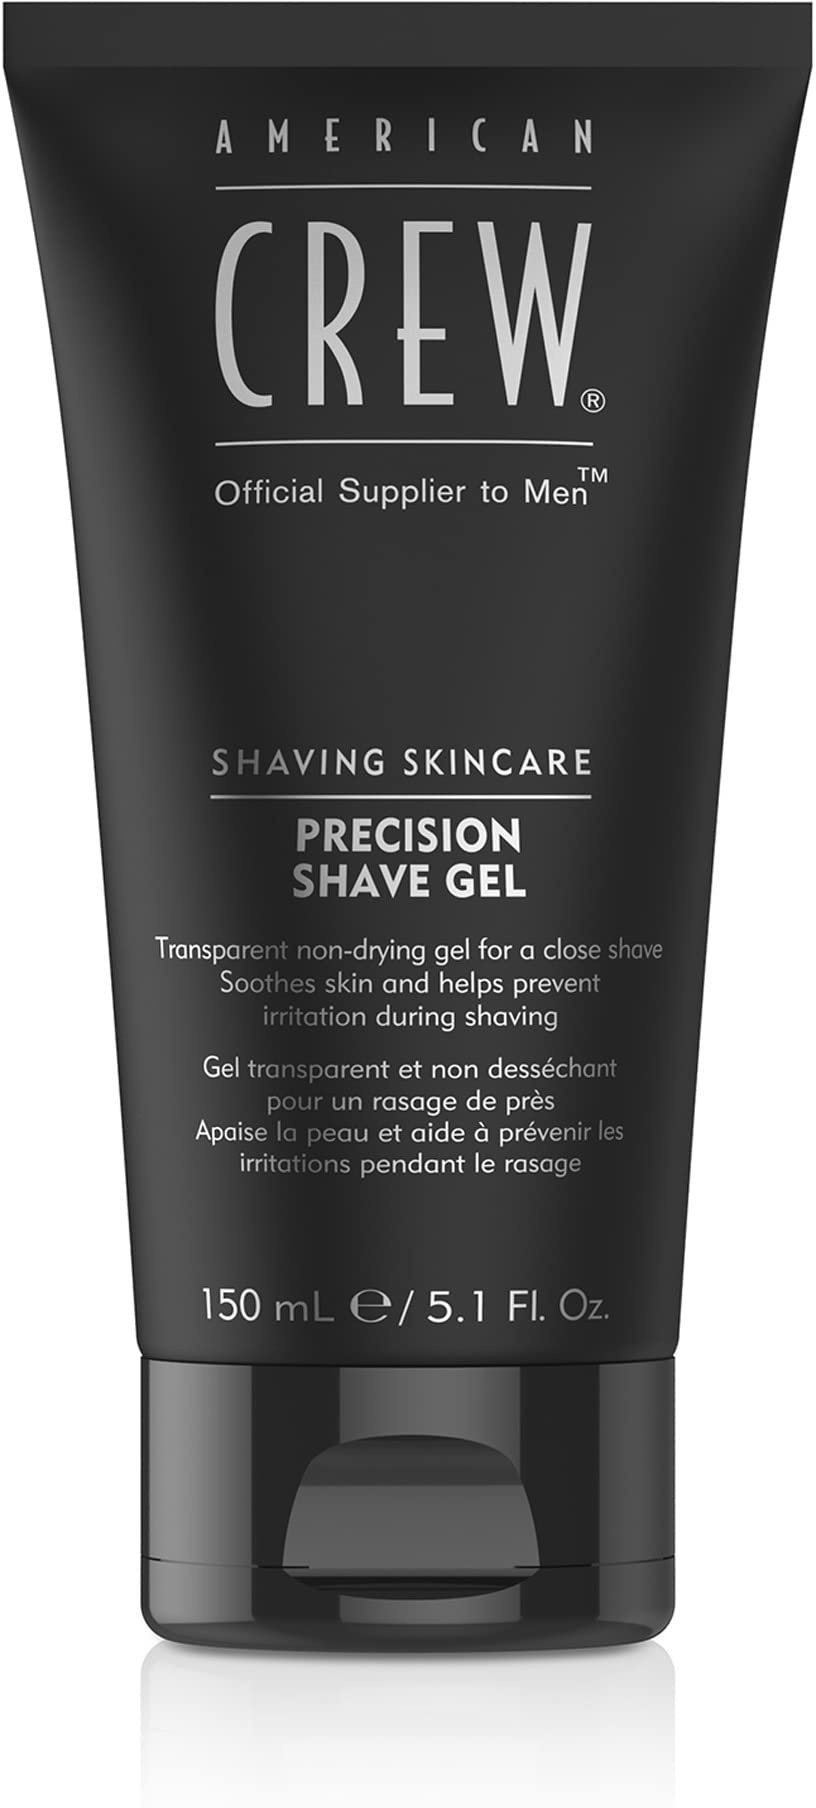 AMERICAN CREW – Precision Shave Gel, 150 ml, Rasiergel für präzise Rasuren, Gel spendet Feuchtigkeit & beruhigt die Haut, Pflegeprodukt beugt Irritationen vor